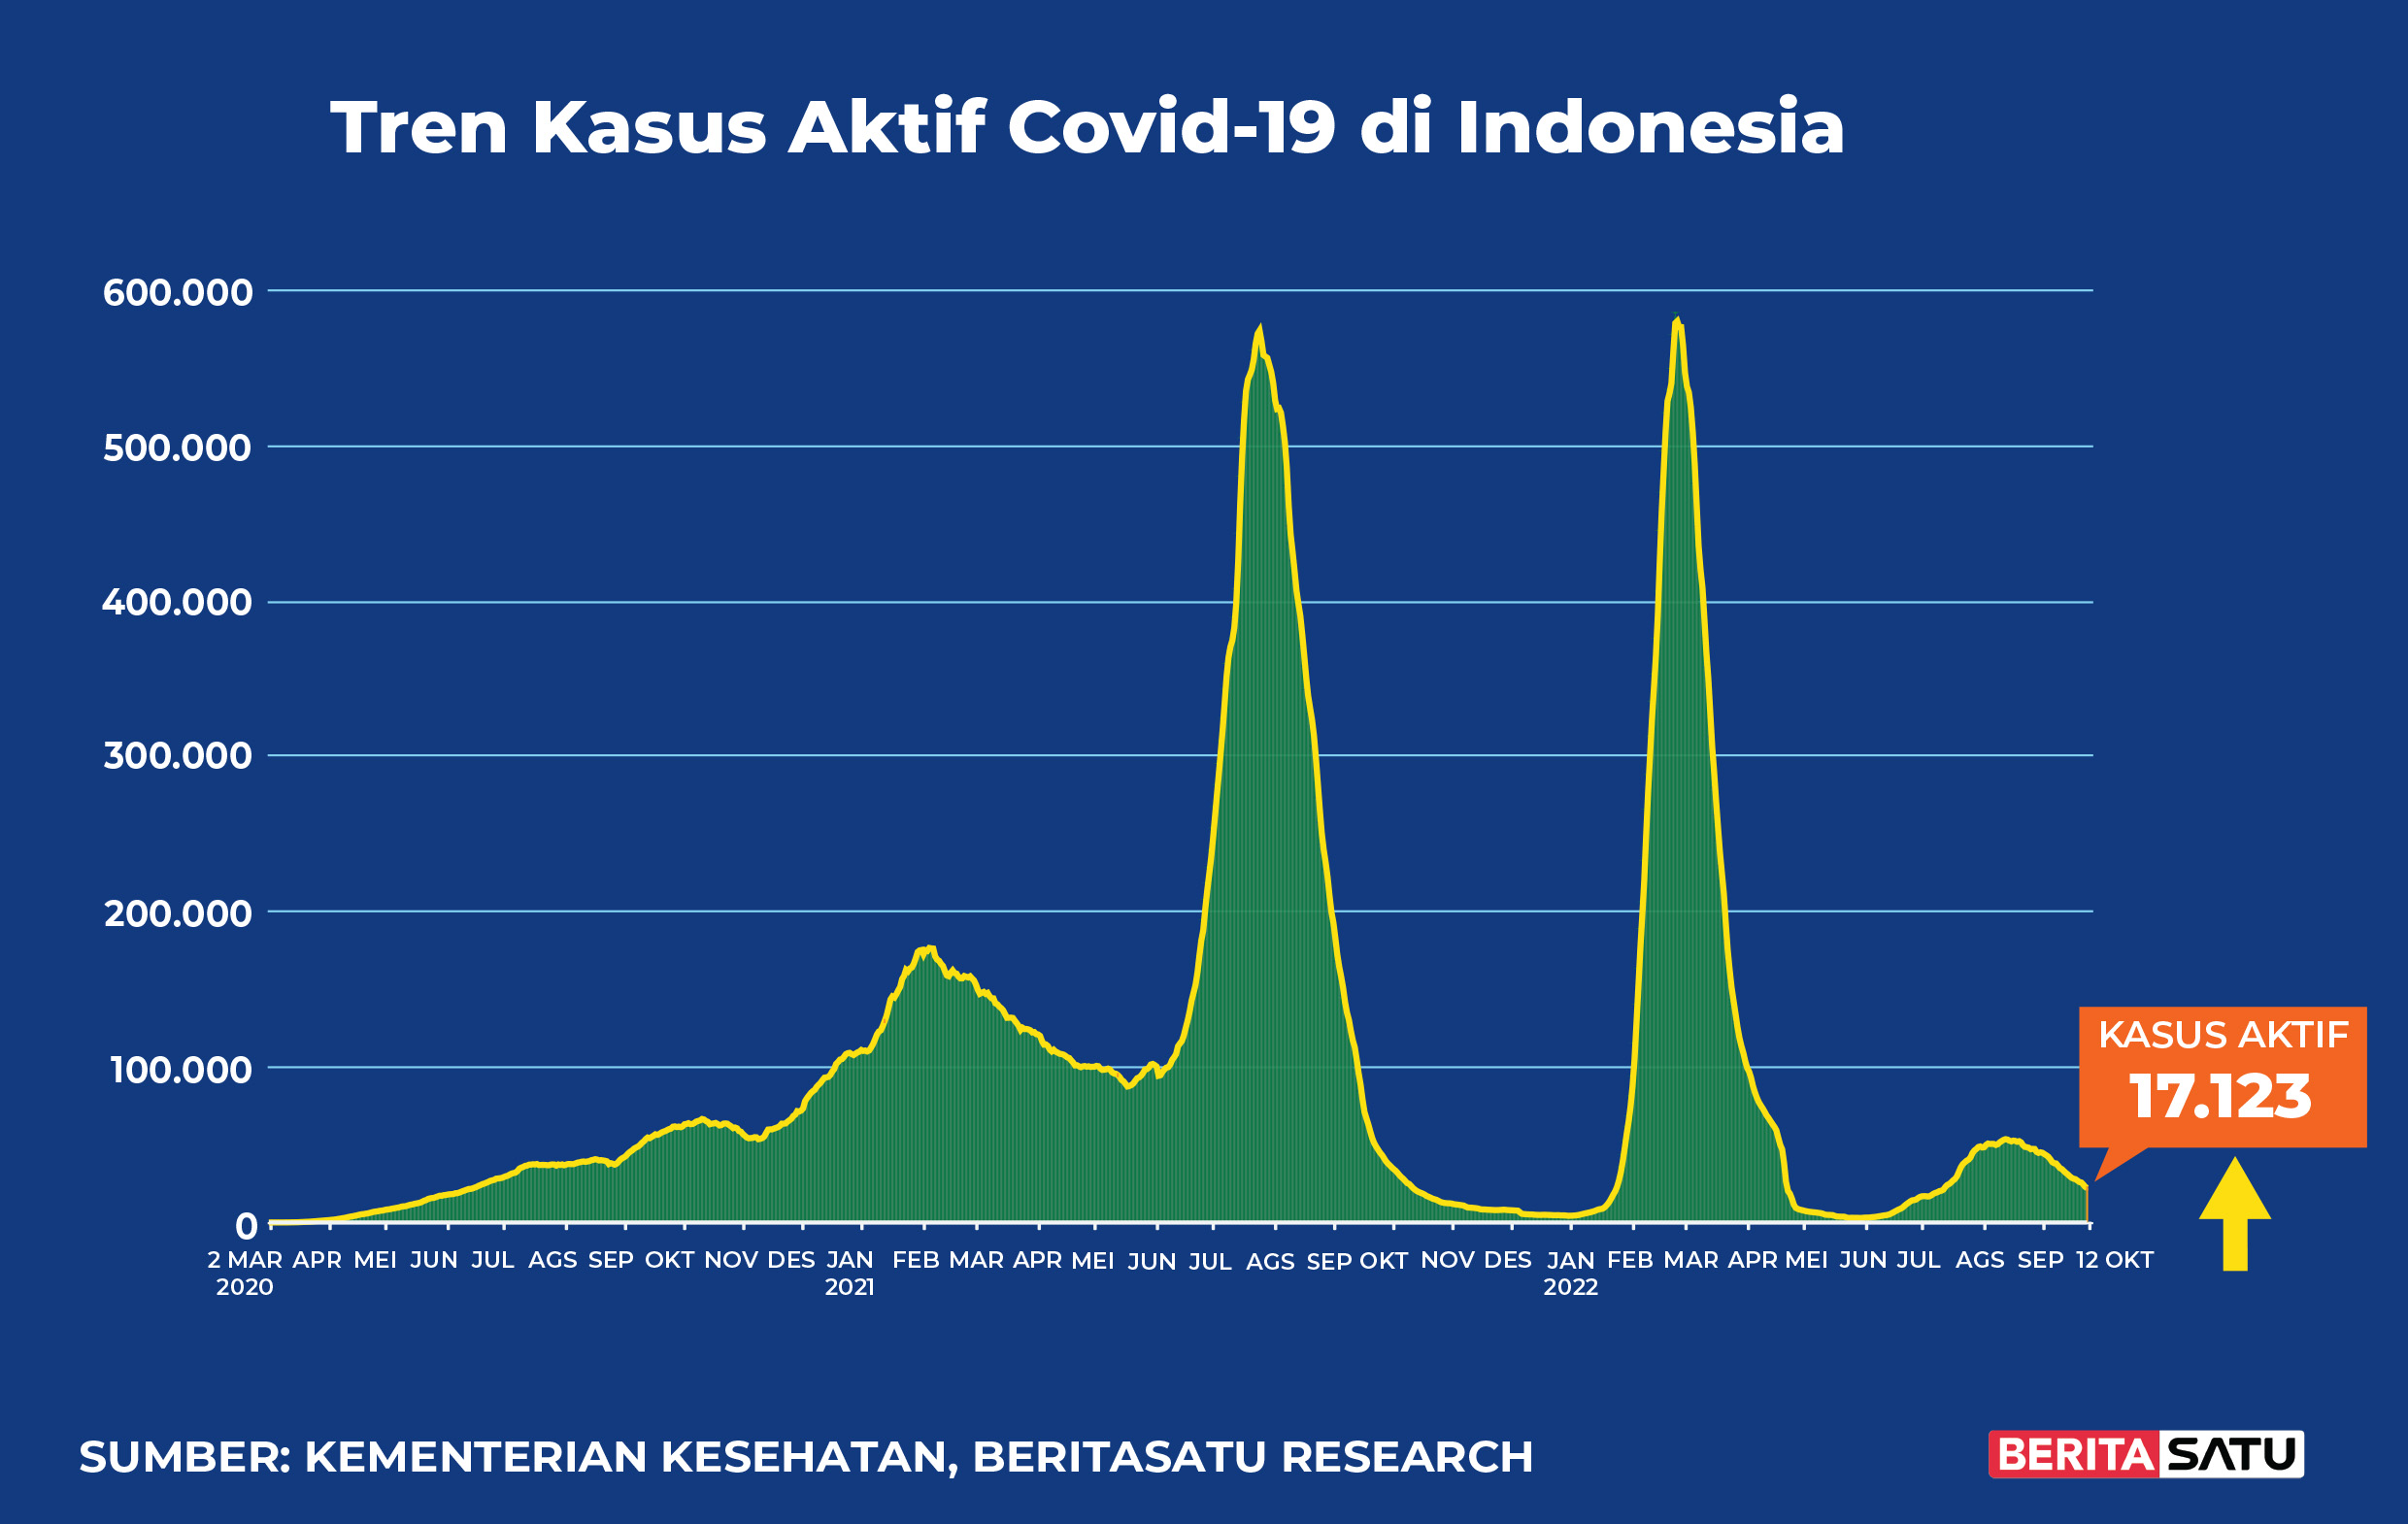 Kasus Aktif Covid-19 di Indonesia sampai 12 Oktober 2022